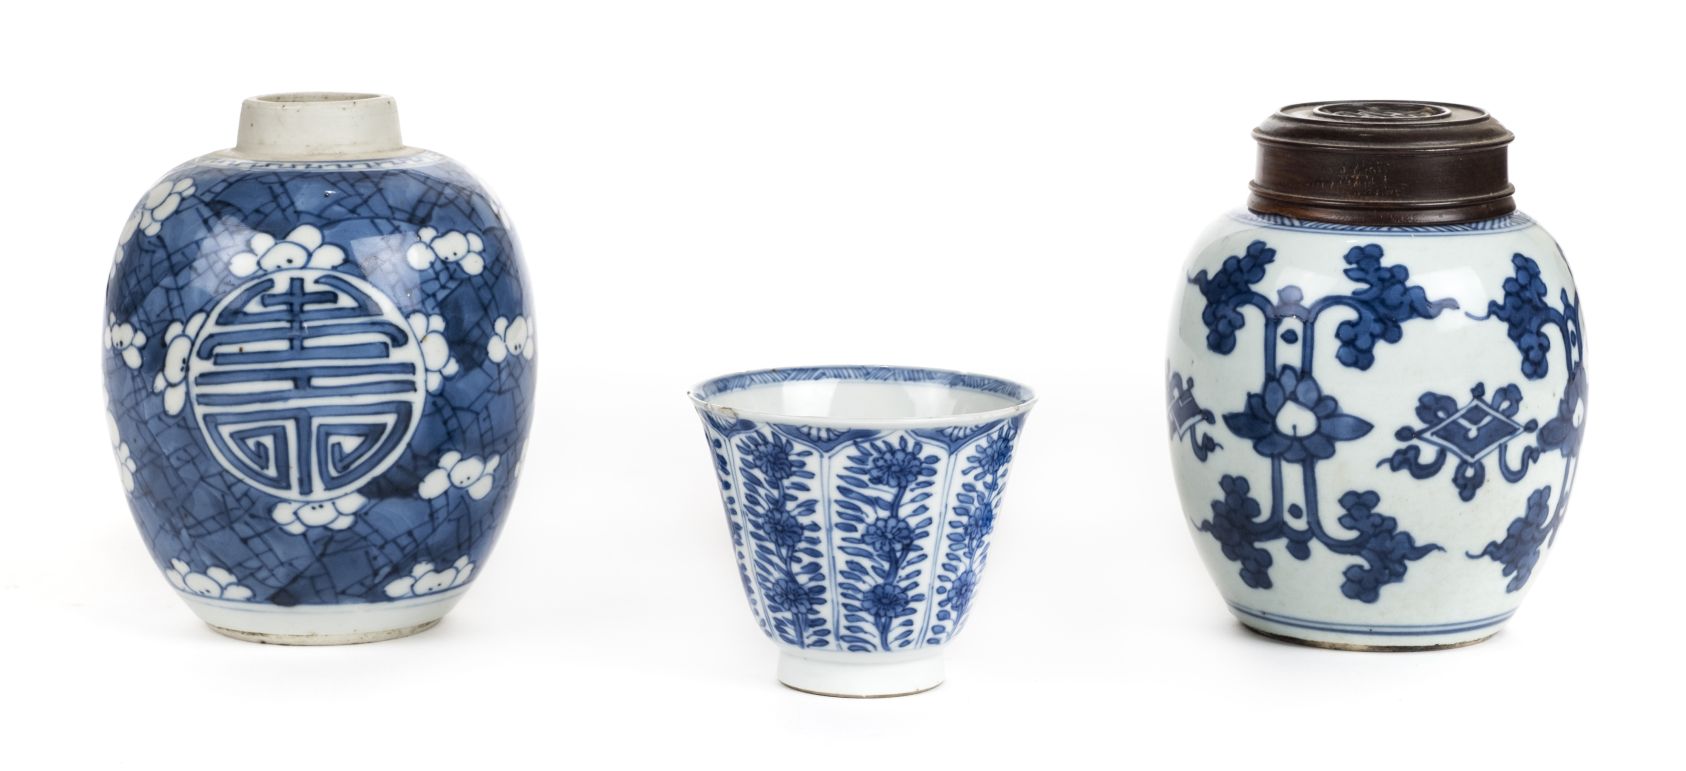 *Ginger Jar. A Chinese Kangxi blue and white porcelain ginger jar, Kangxi (1662-1722), decorated